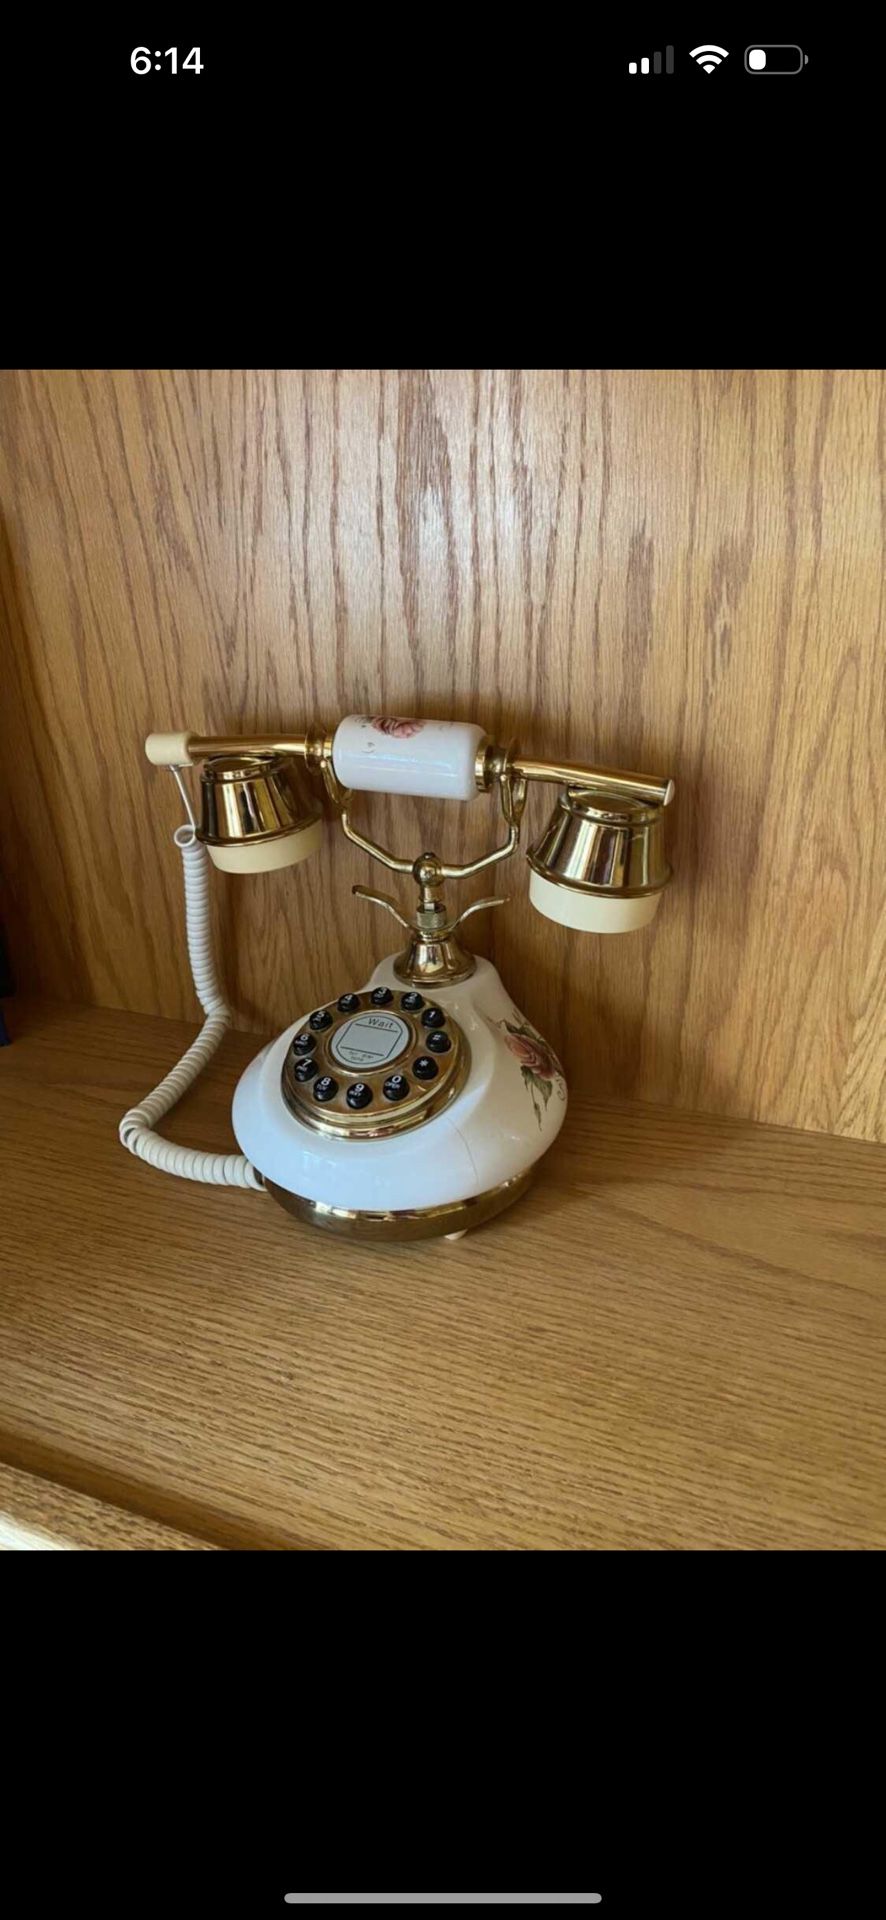 Retro vintage Antique style Floral ceramic telephone